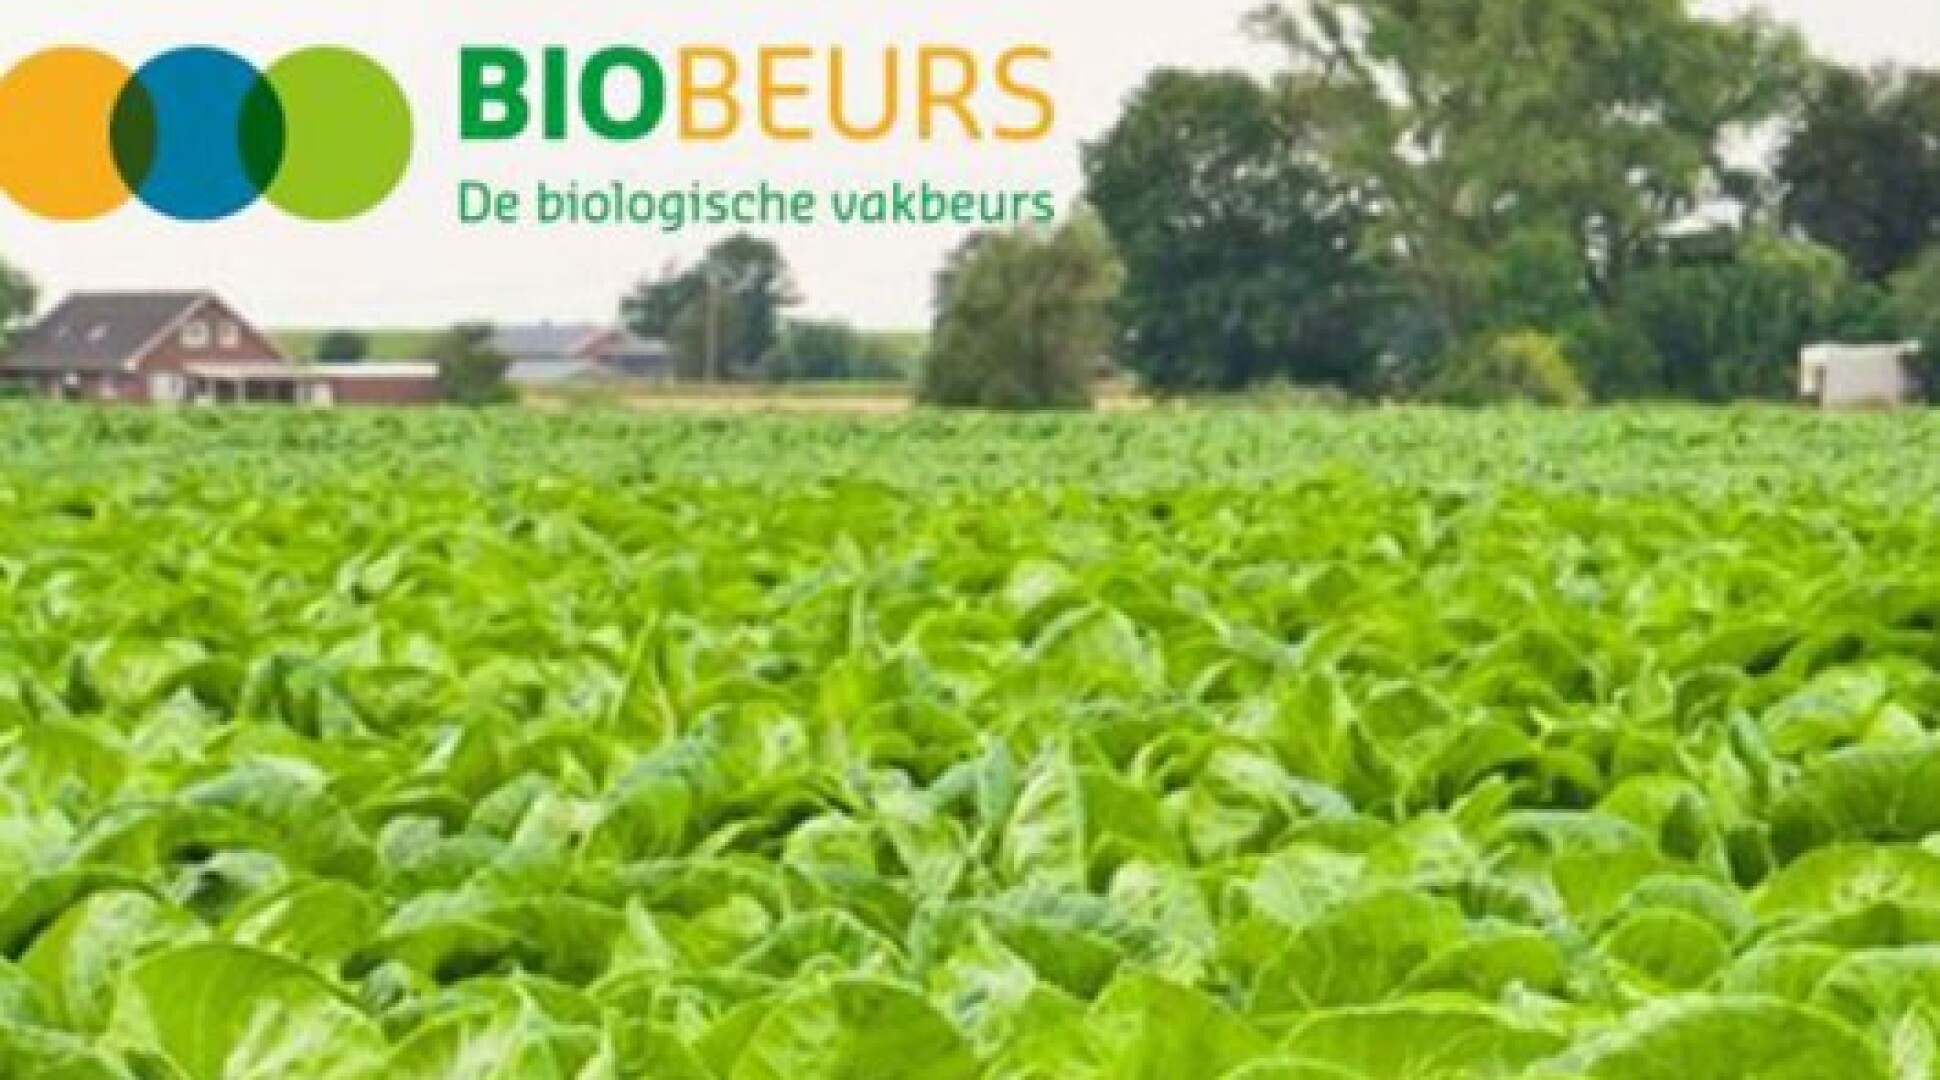 Kennismaking BioAcademy-cursusaanbod op de Biobeurs